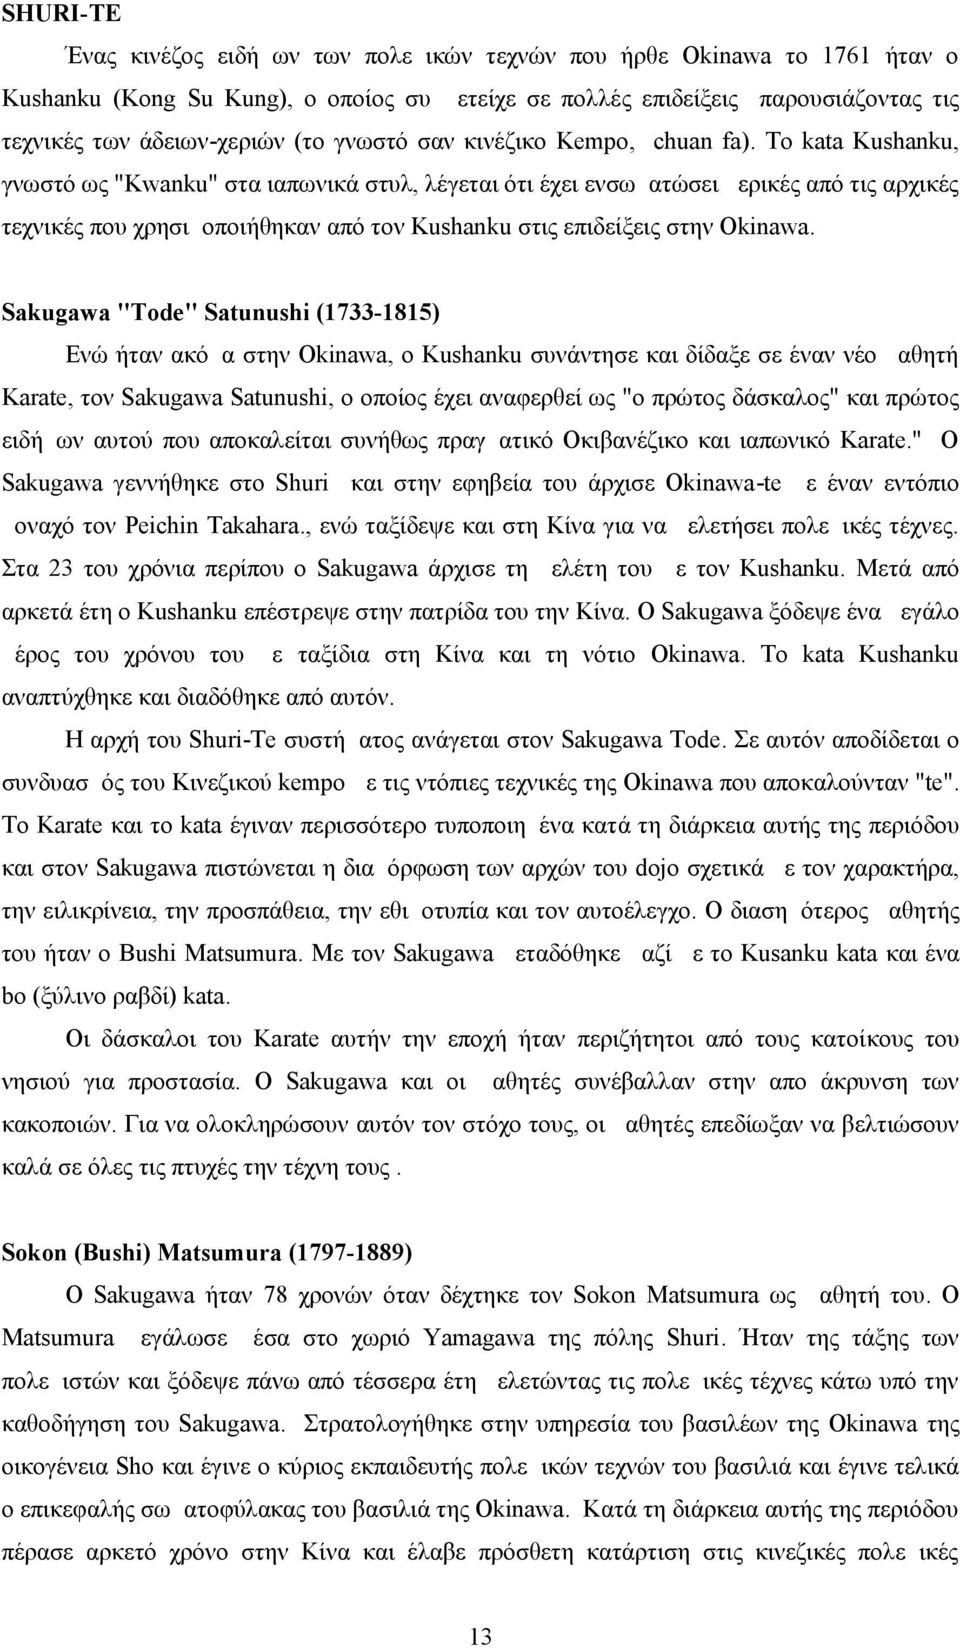 Το kata Kushanku, γνωστό ως "Kwanku" στα ιαπωνικά στυλ, λέγεται ότι έχει ενσωματώσει μερικές από τις αρχικές τεχνικές που χρησιμοποιήθηκαν από τον Kushanku στις επιδείξεις στην Okinawa.